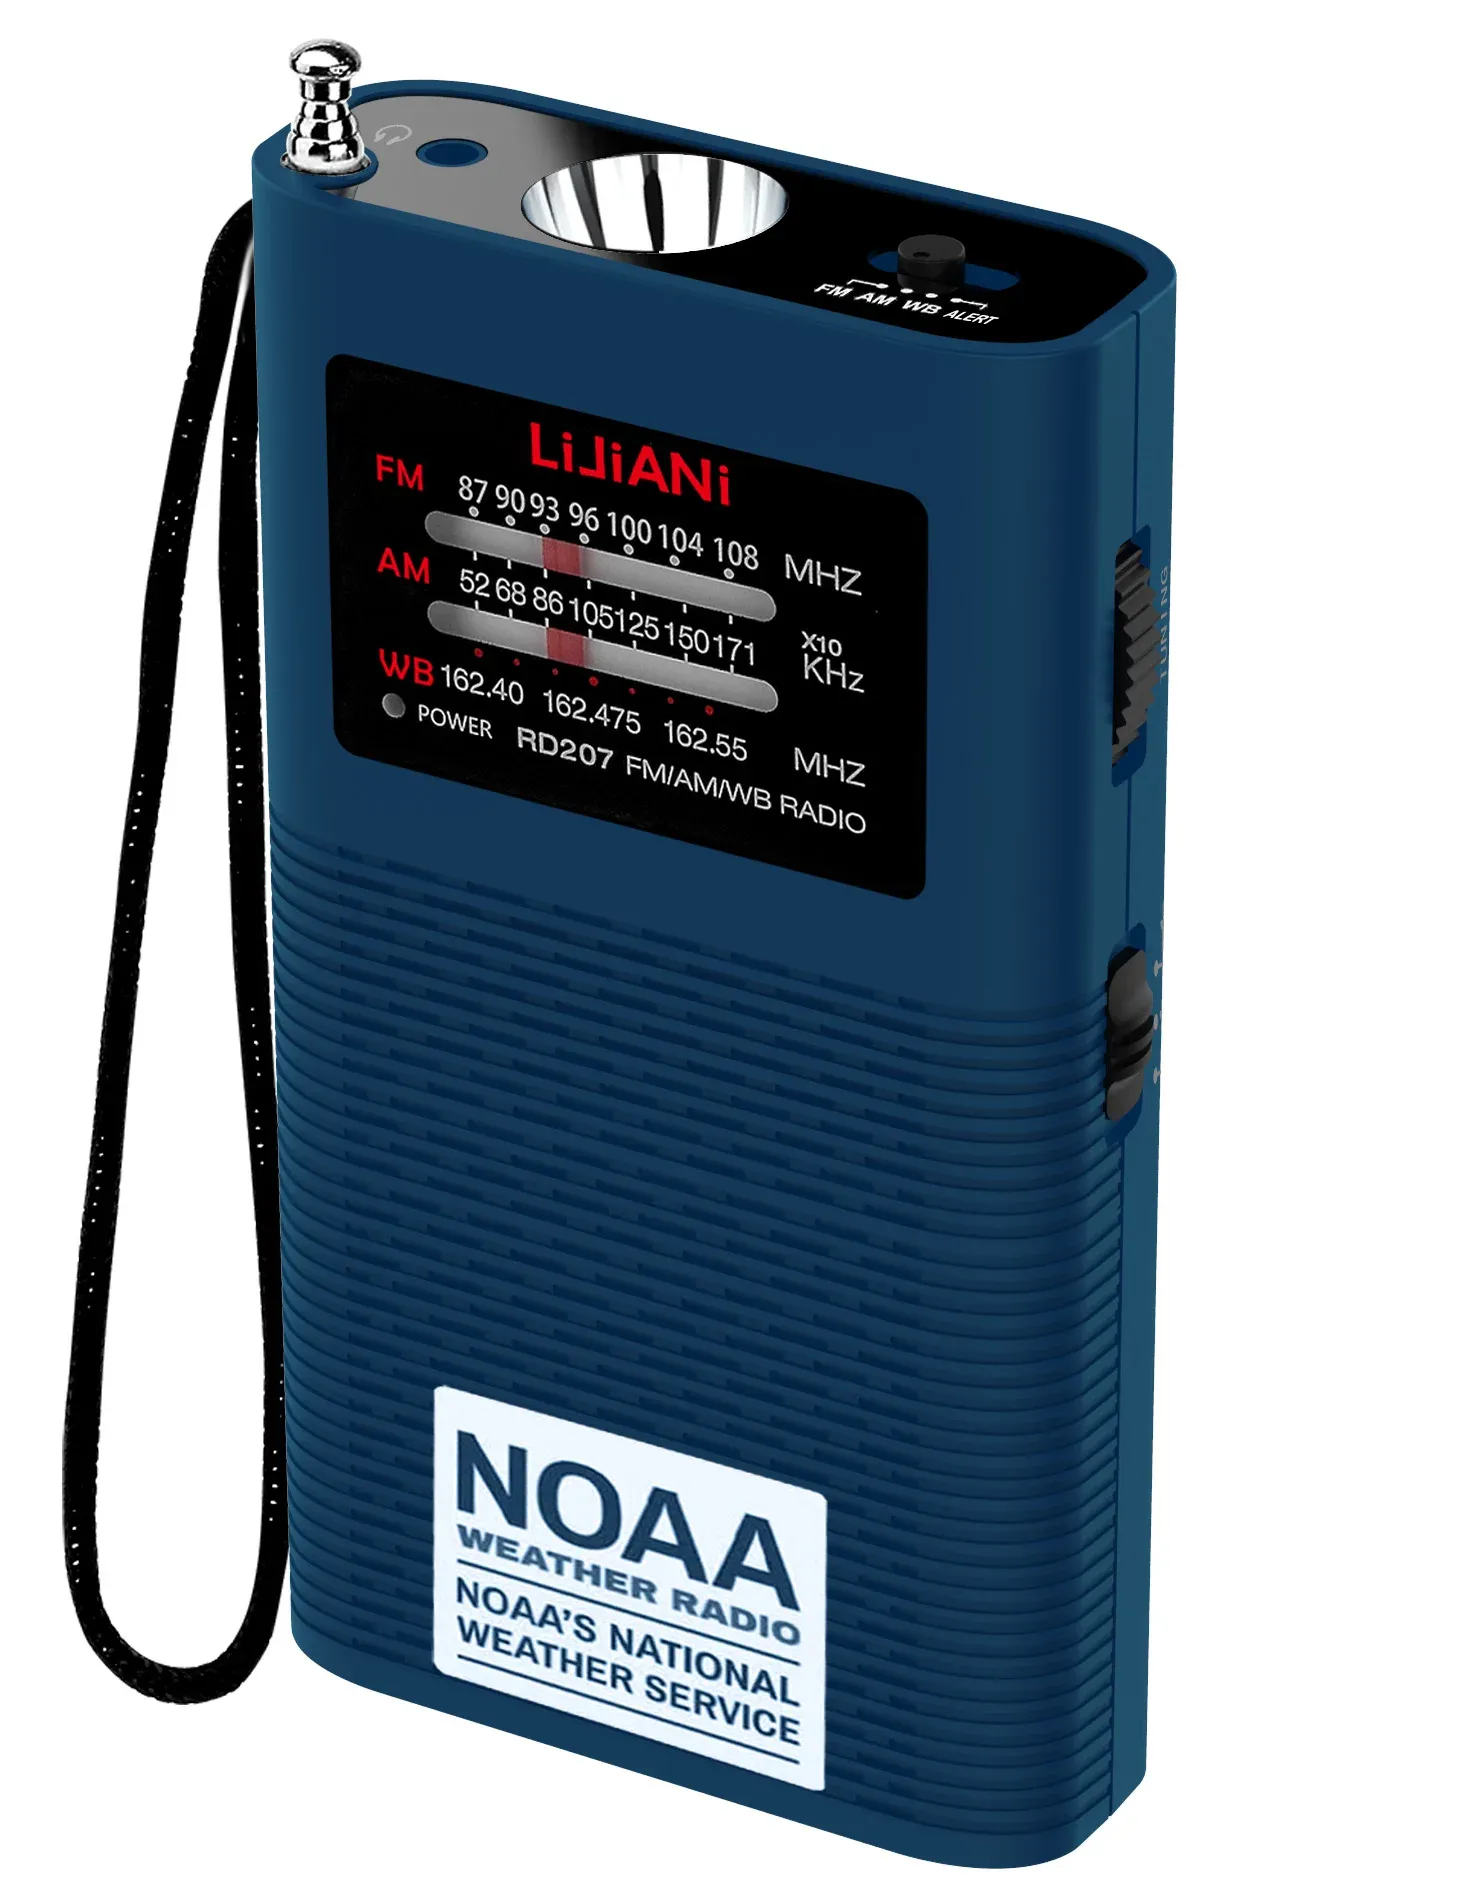 Radio Noaa Weather Radio Portable AM ​​FM Bateria tranzystorowa obsługiwana przez 1500 mAh (wchodzi) z silną wersją tylko Flashlinghtus.